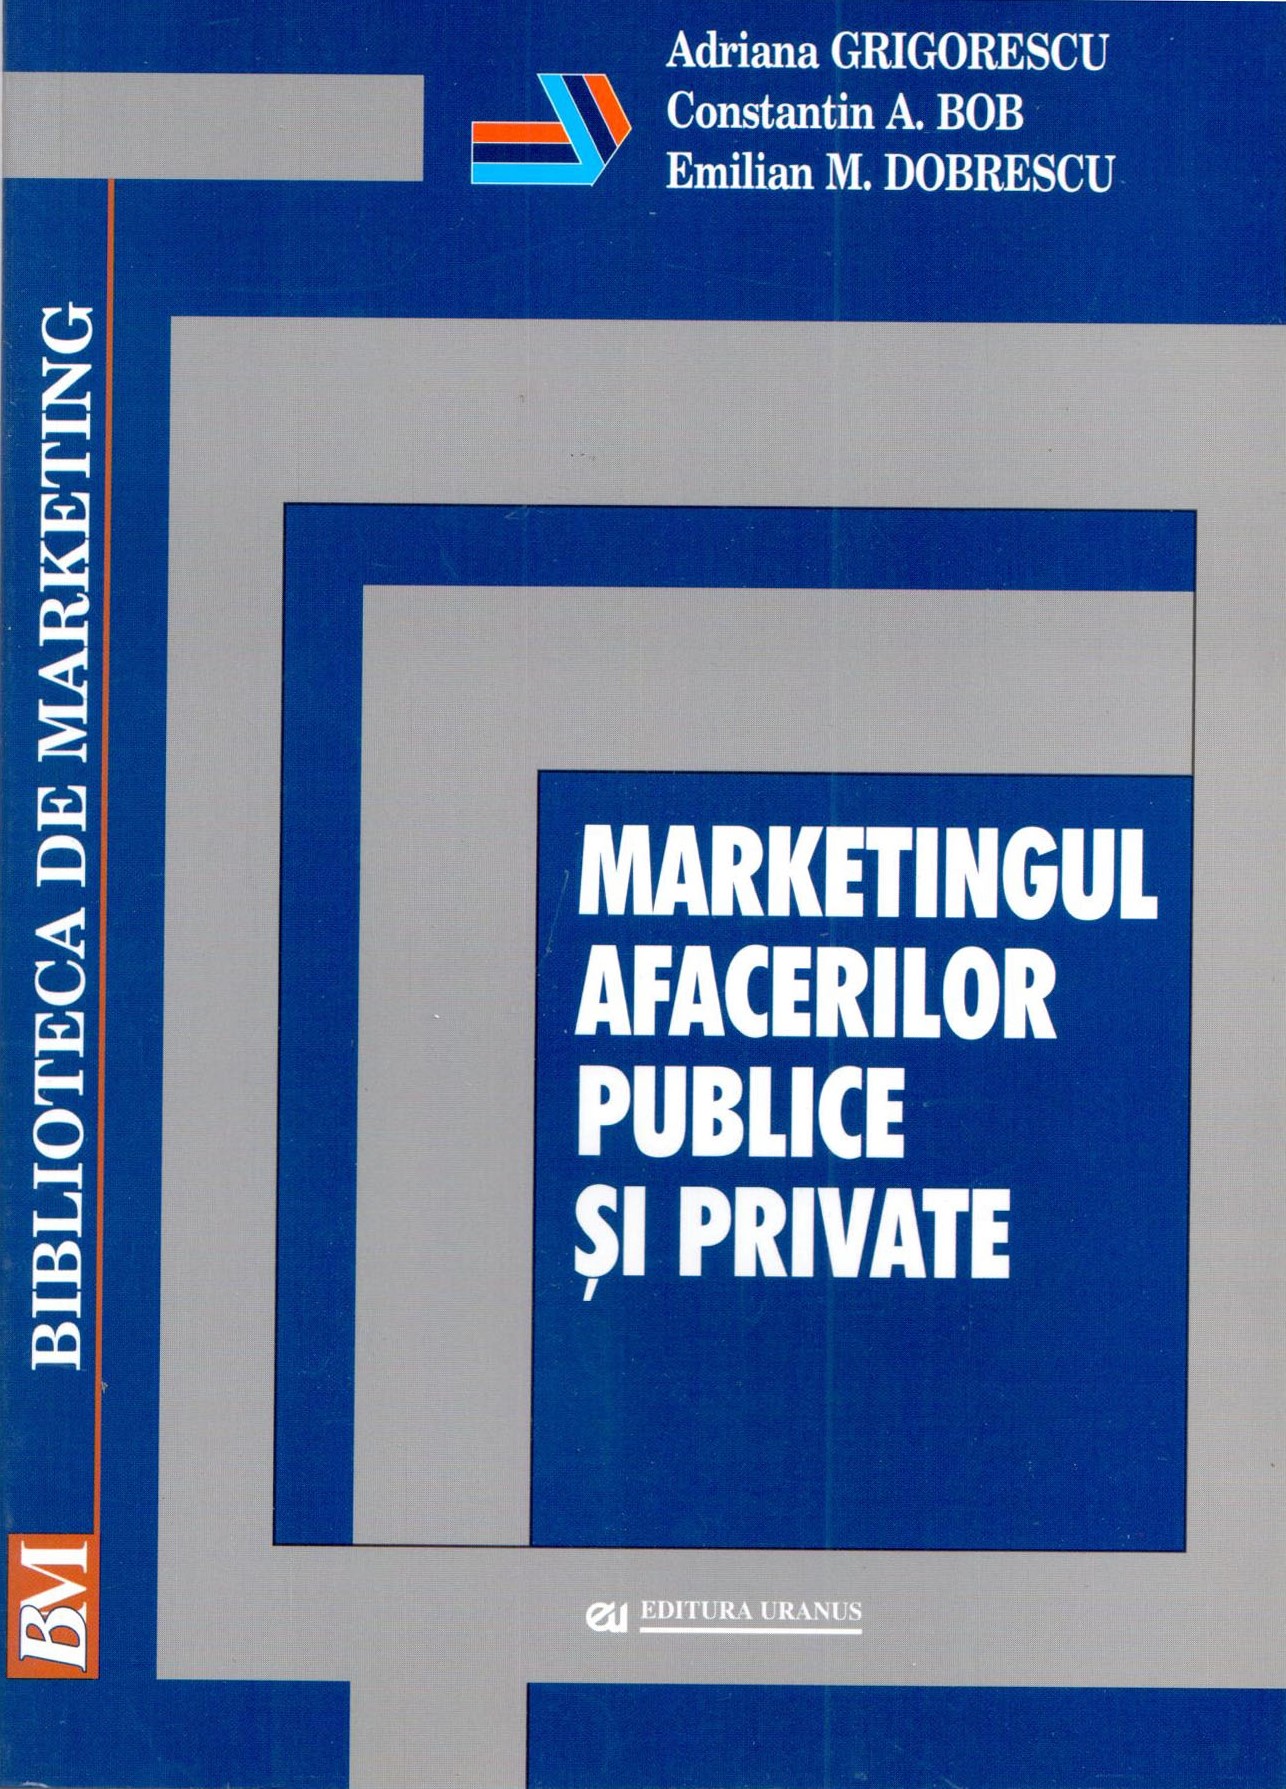 PDF Marketingul afacerilor publice si private | Adriana Grigorescu, Constantin Bob, Emilian Dobrescu carturesti.ro Carte